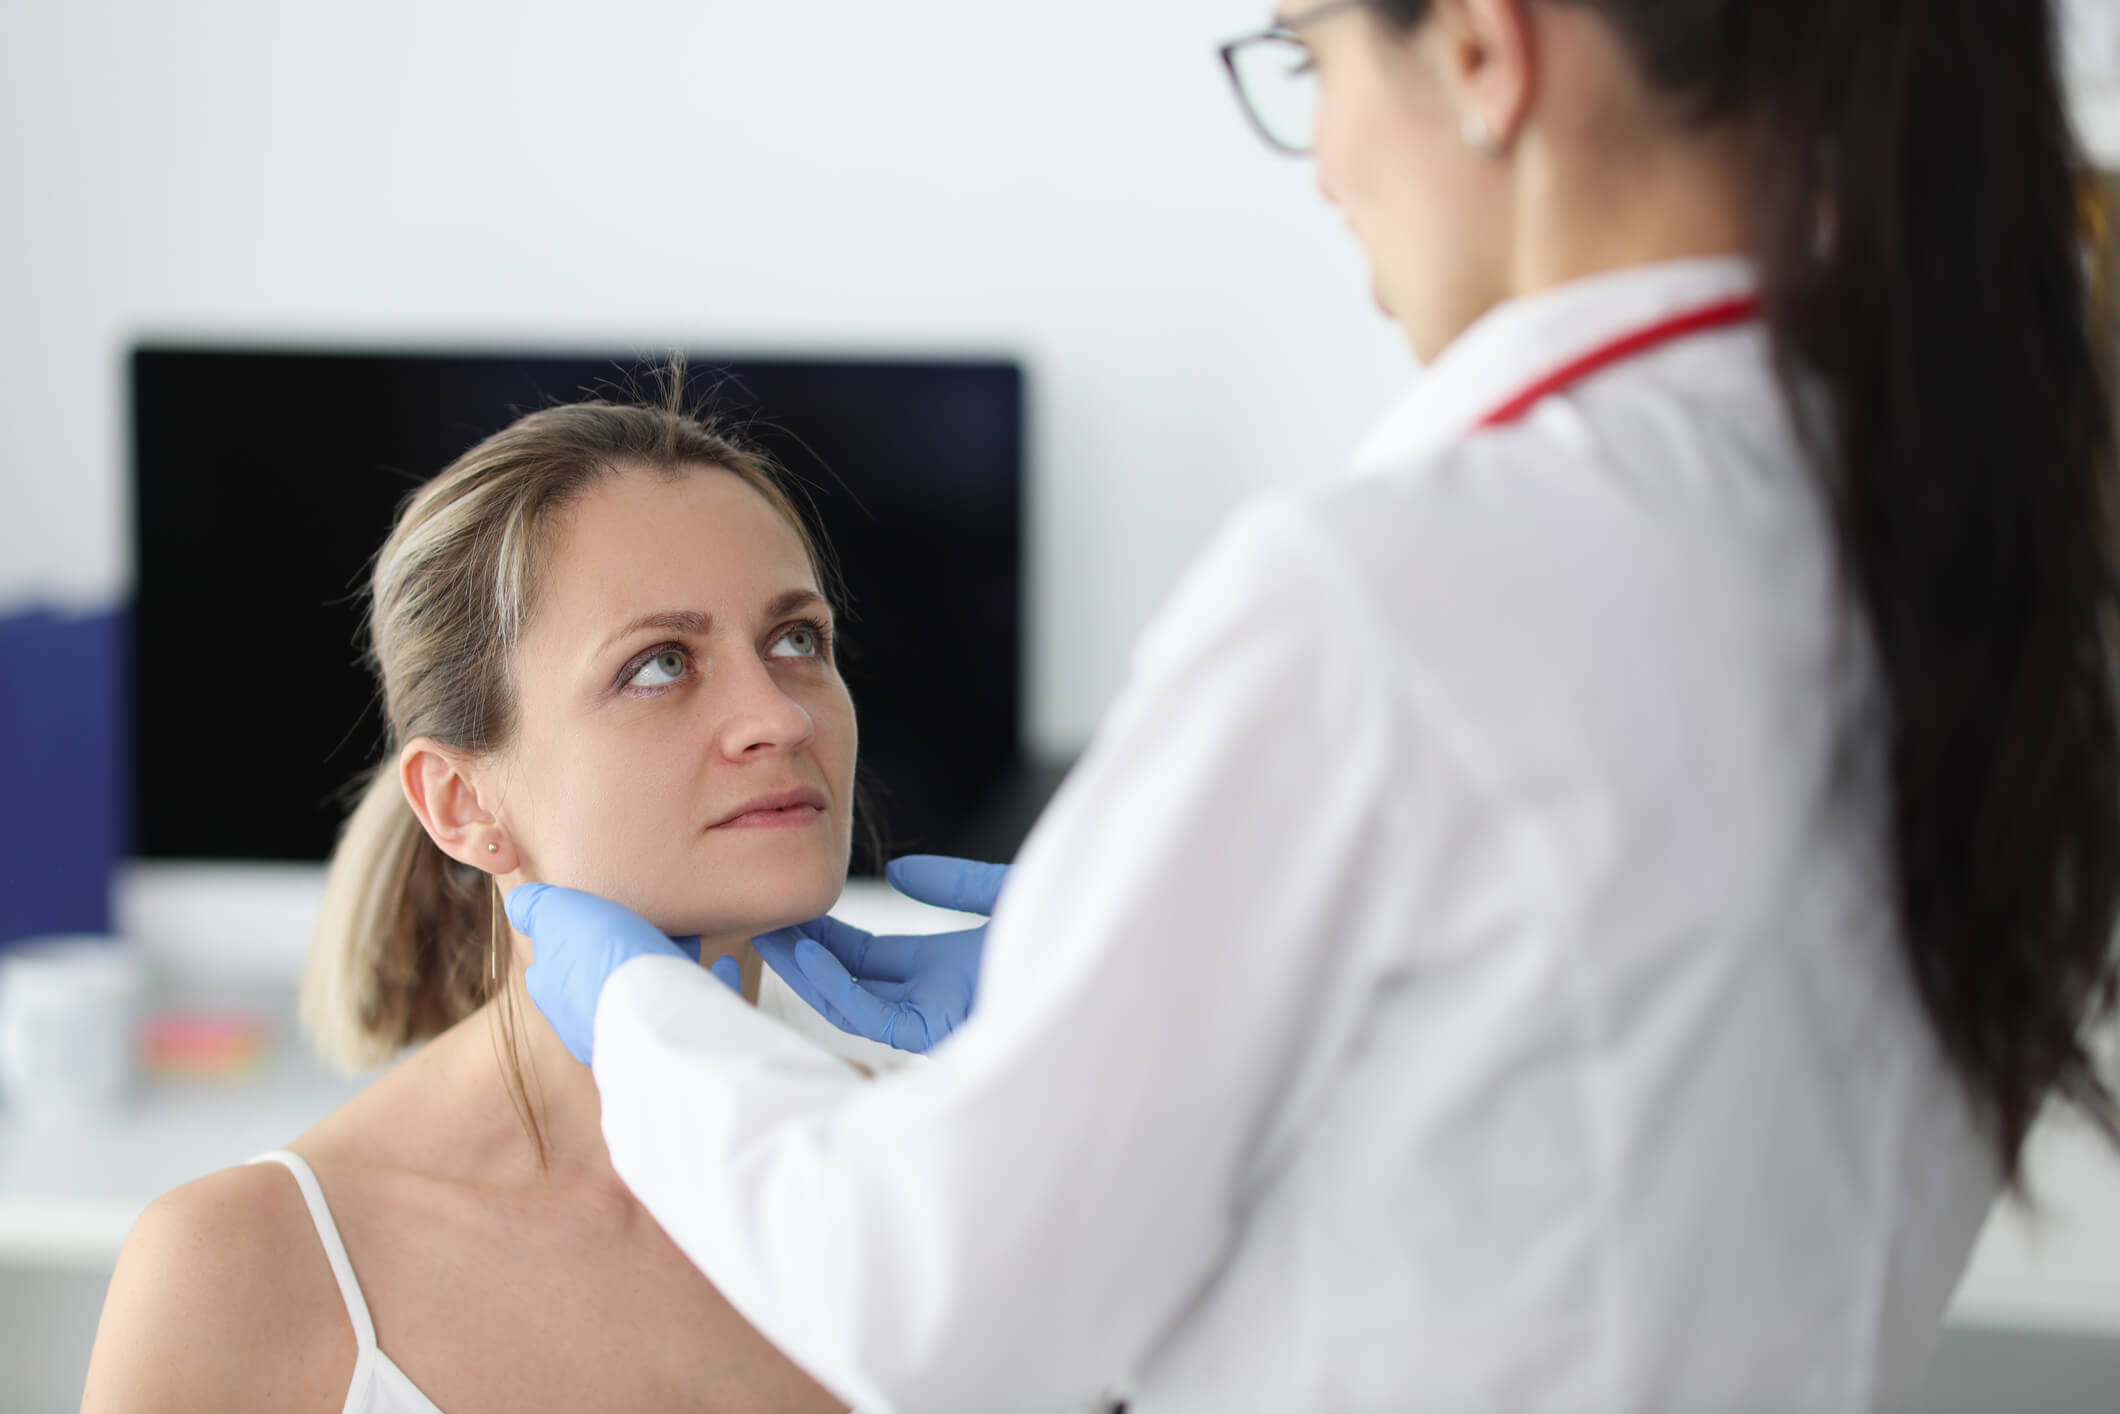 Ärztin tastet bei einer Patientin die Lymphknoten am Hals ab.